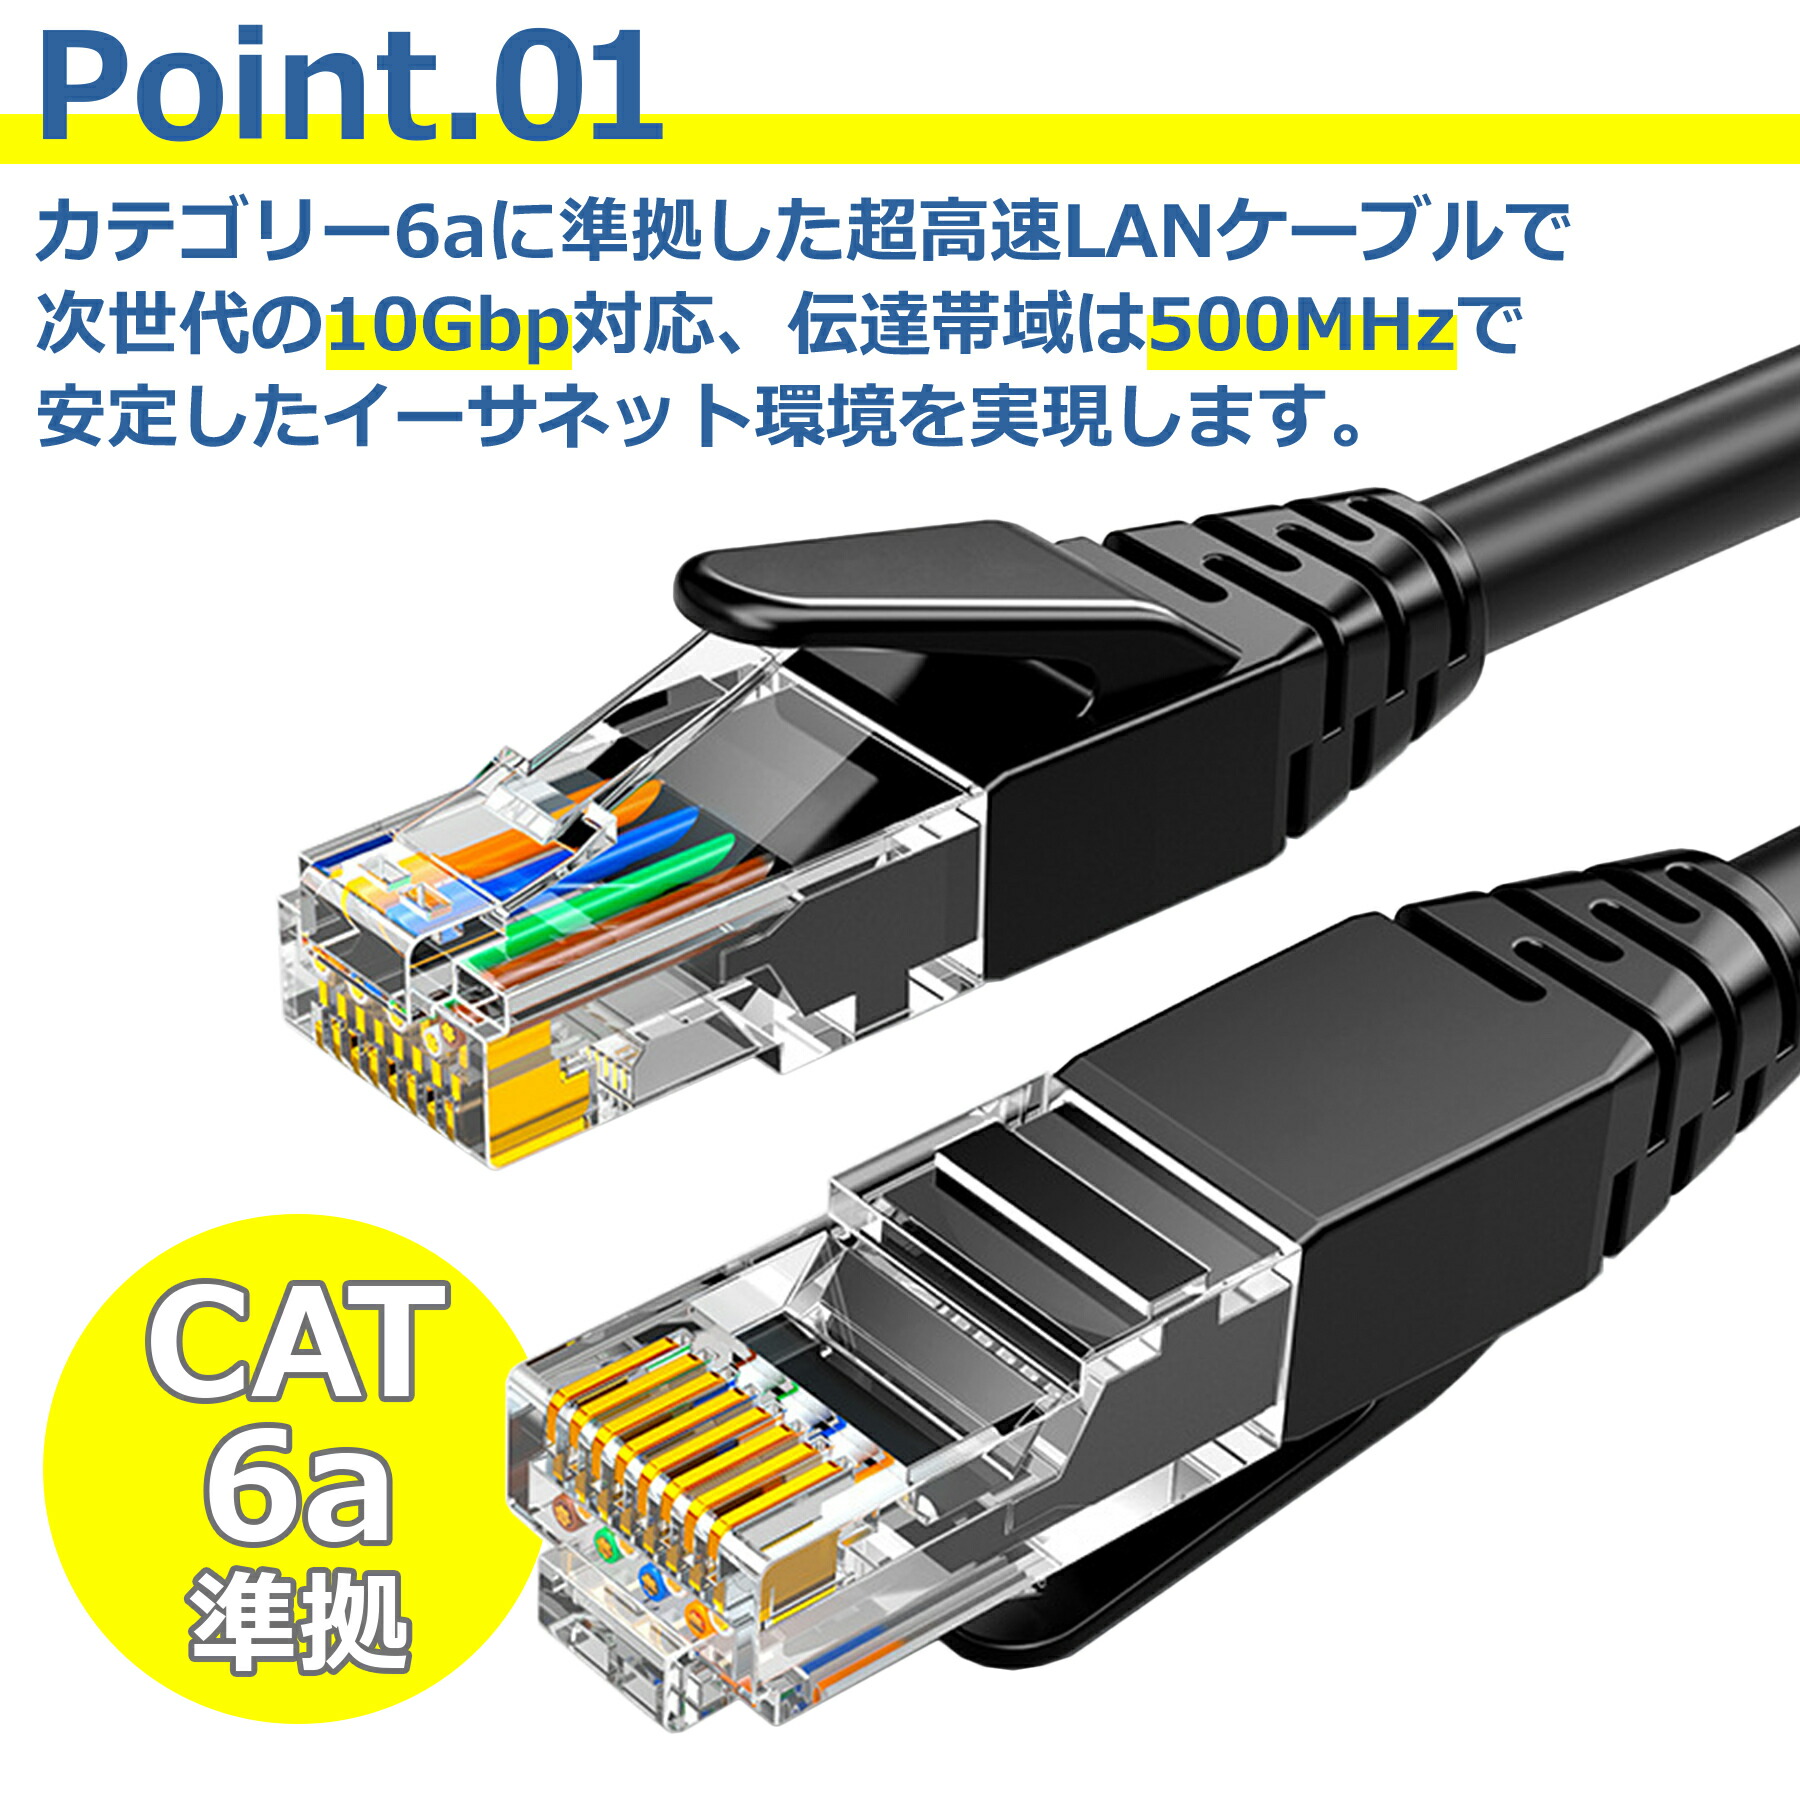 LAN кабель CAT6a 1m 10Gbps 500MHz телевизор персональный компьютер RJ45 высокая скорость ушко поломка предотвращение высокая прочность категория -6a